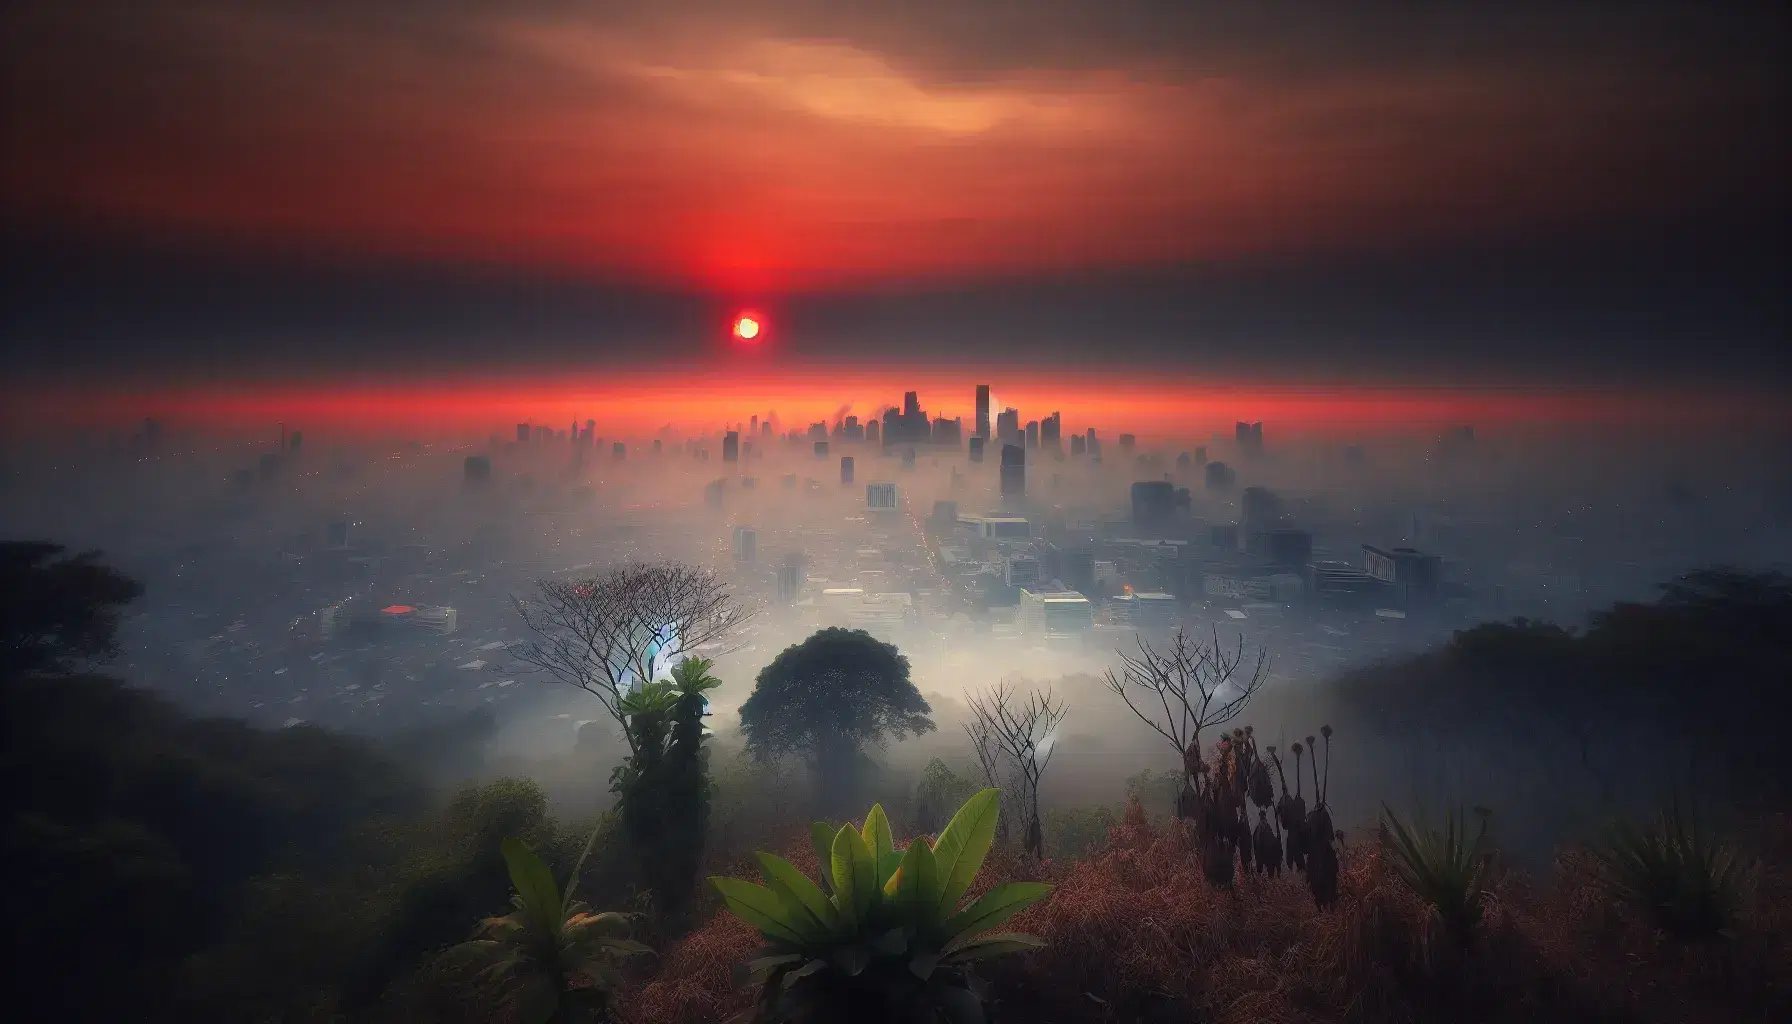 Vista di una città avvolta nella nebbia al tramonto con silhouette di grattacieli, cielo arancione-rosso e vegetazione in primo piano.